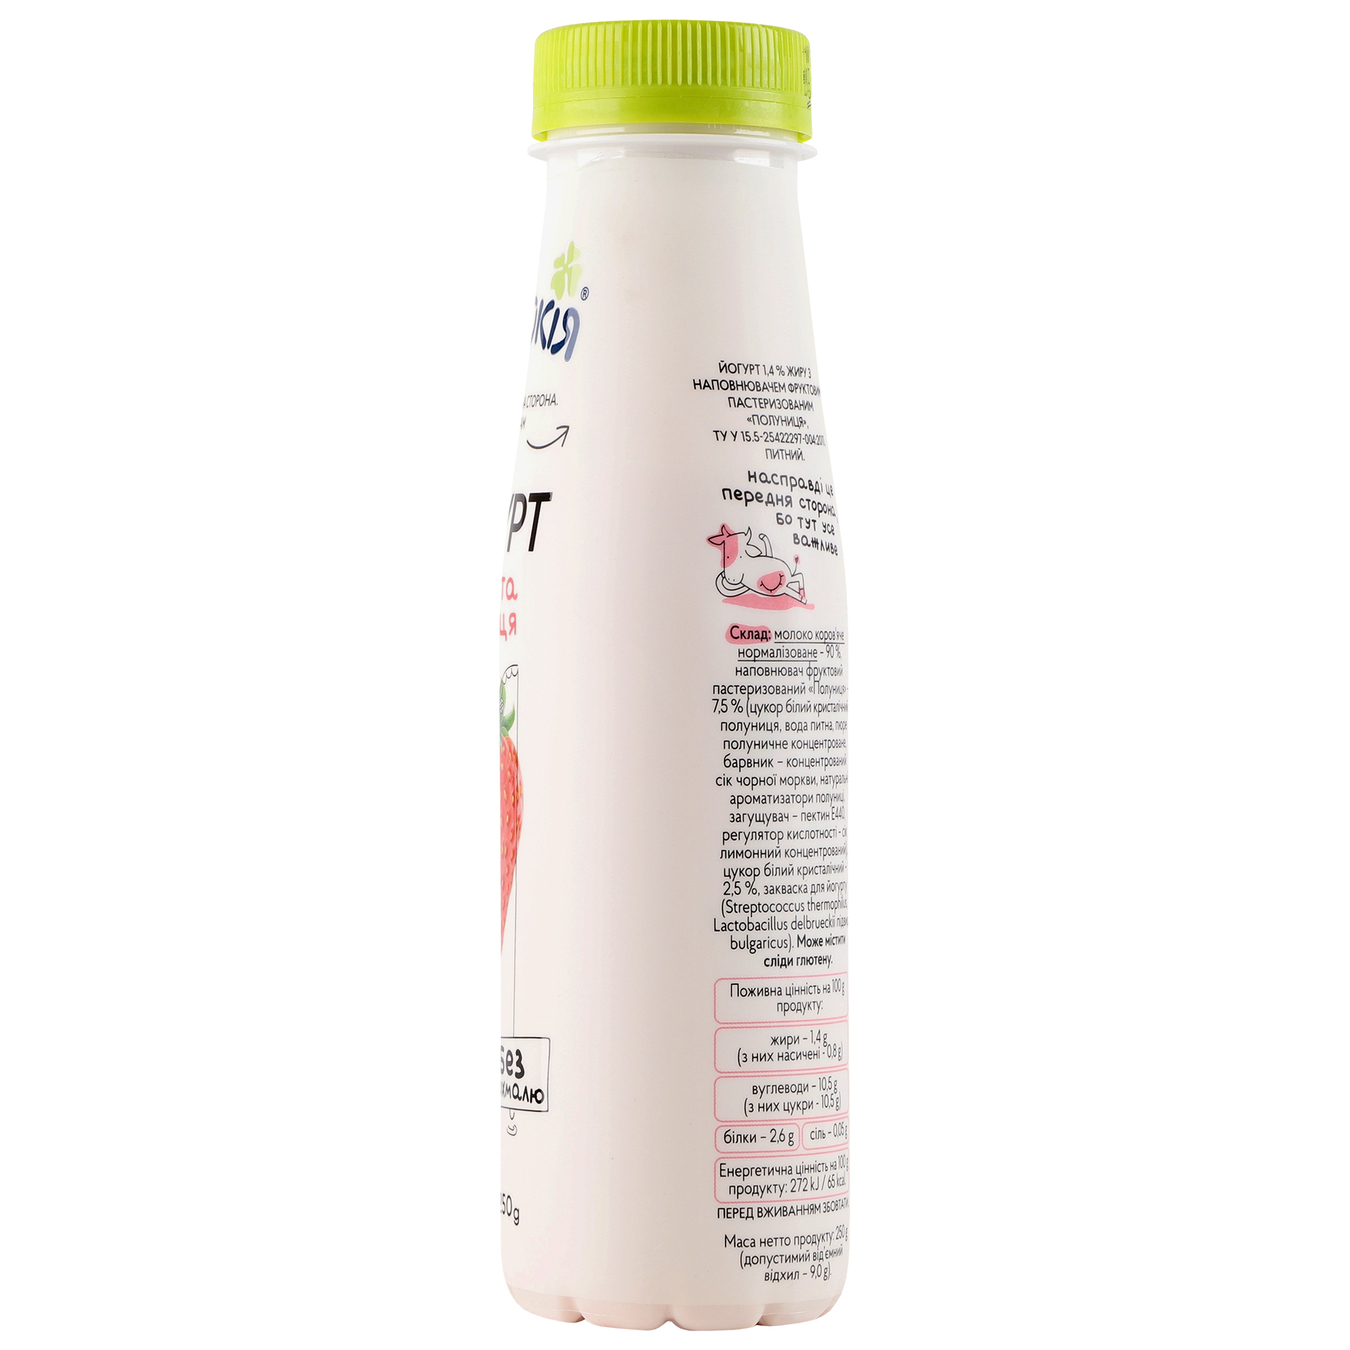 Йогурт Молокия Сочная клубника 1.4% 250г 7